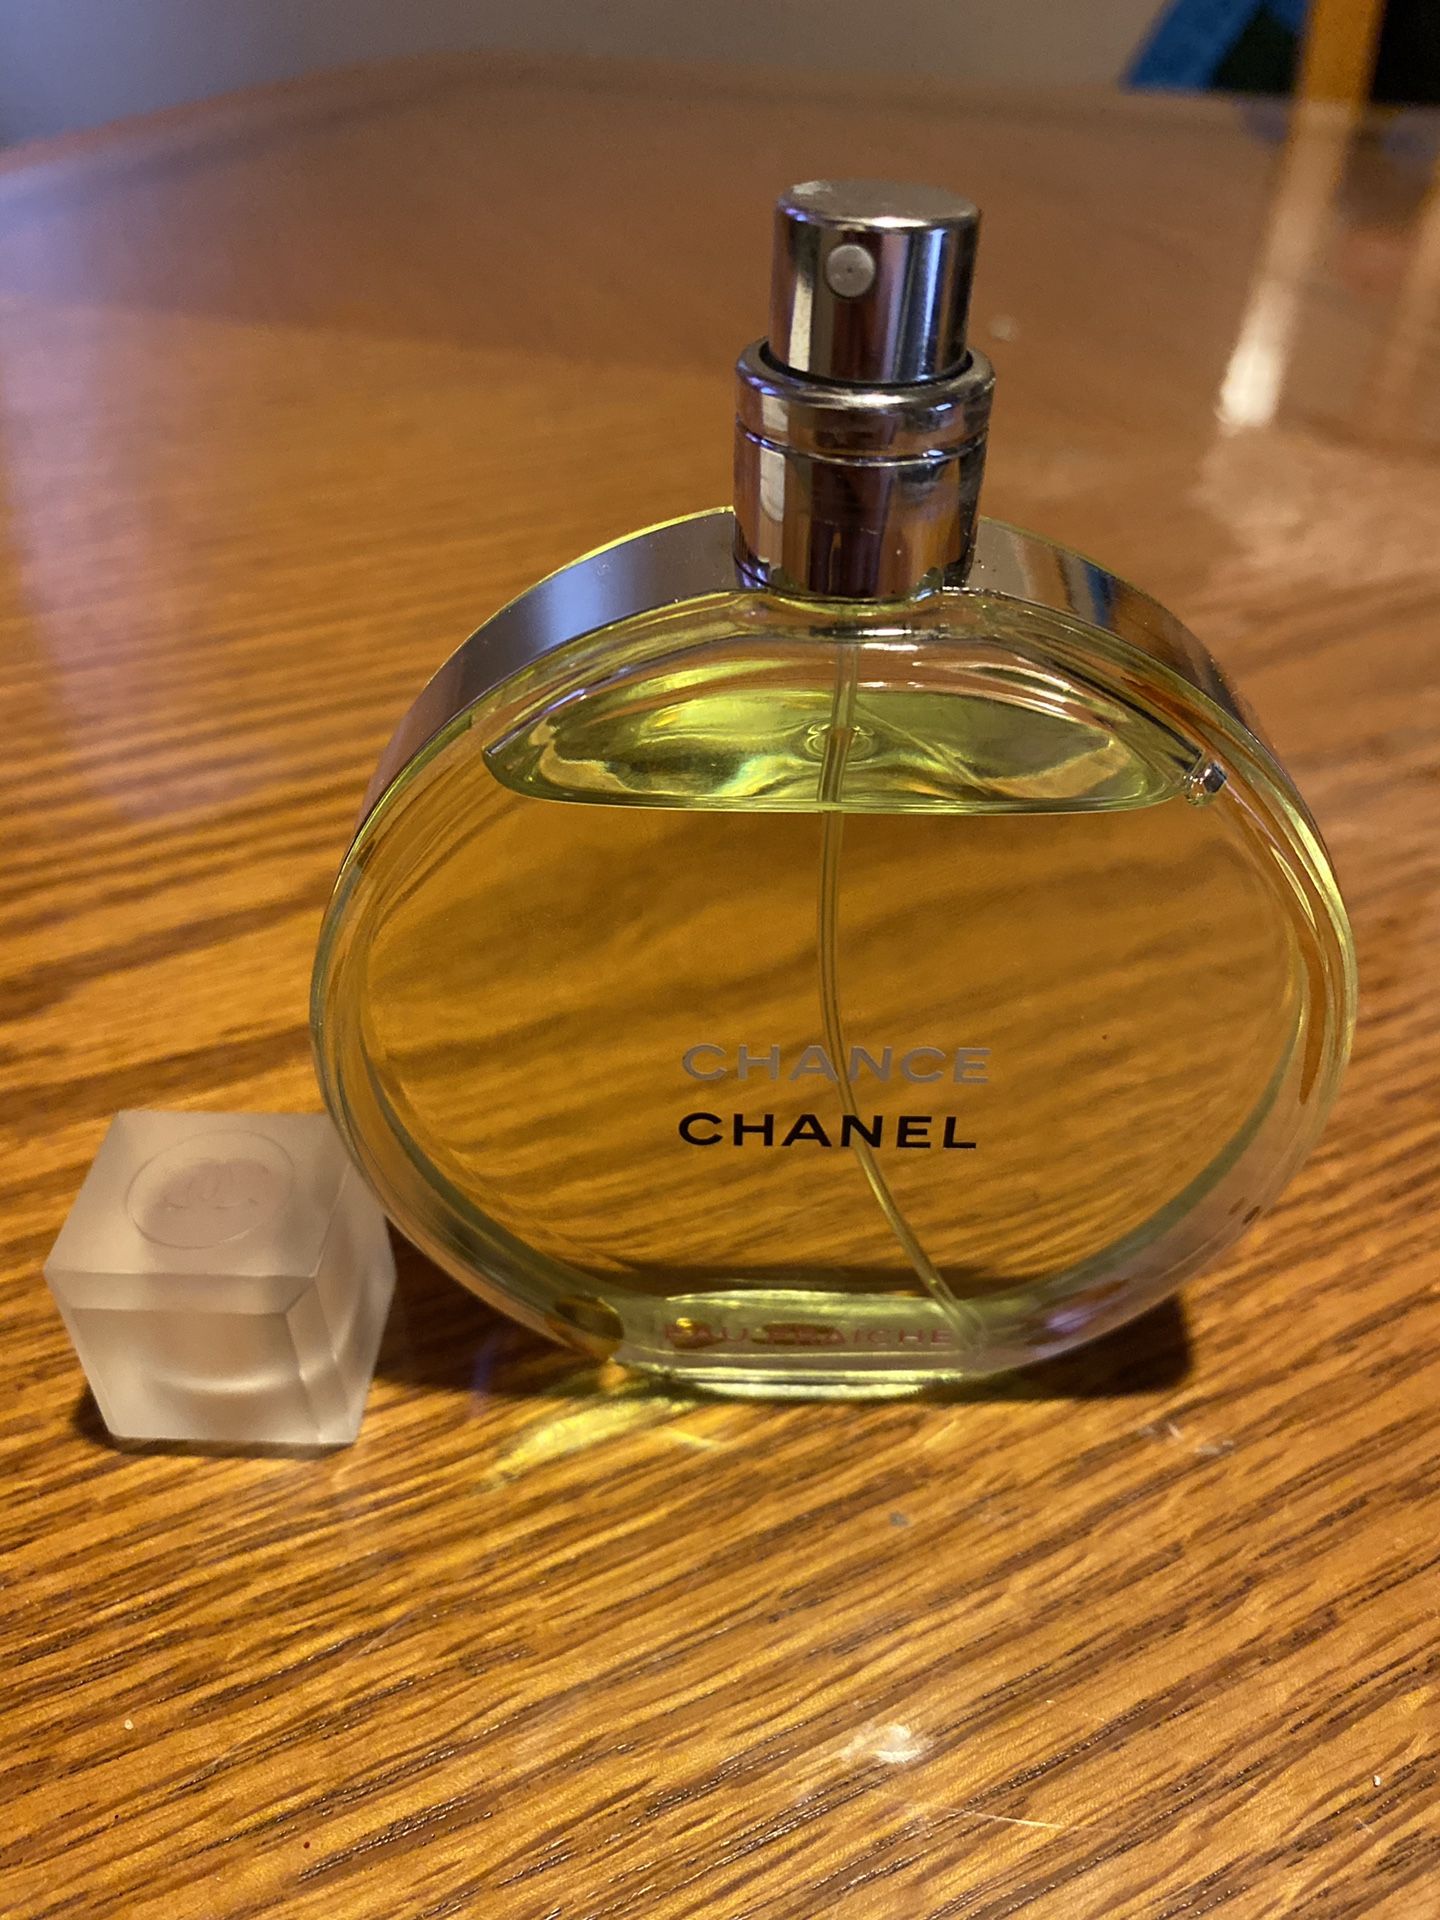 Chanel Chance Eau Fraiche Eau De Toilette 3.4 Oz. Tester (BOTTLE ONLY, NO TESTER BOX)100% AUTHENTIC! WOMEN PERFUME (BRAND NEW) PLEASE READ DESCRIPTION